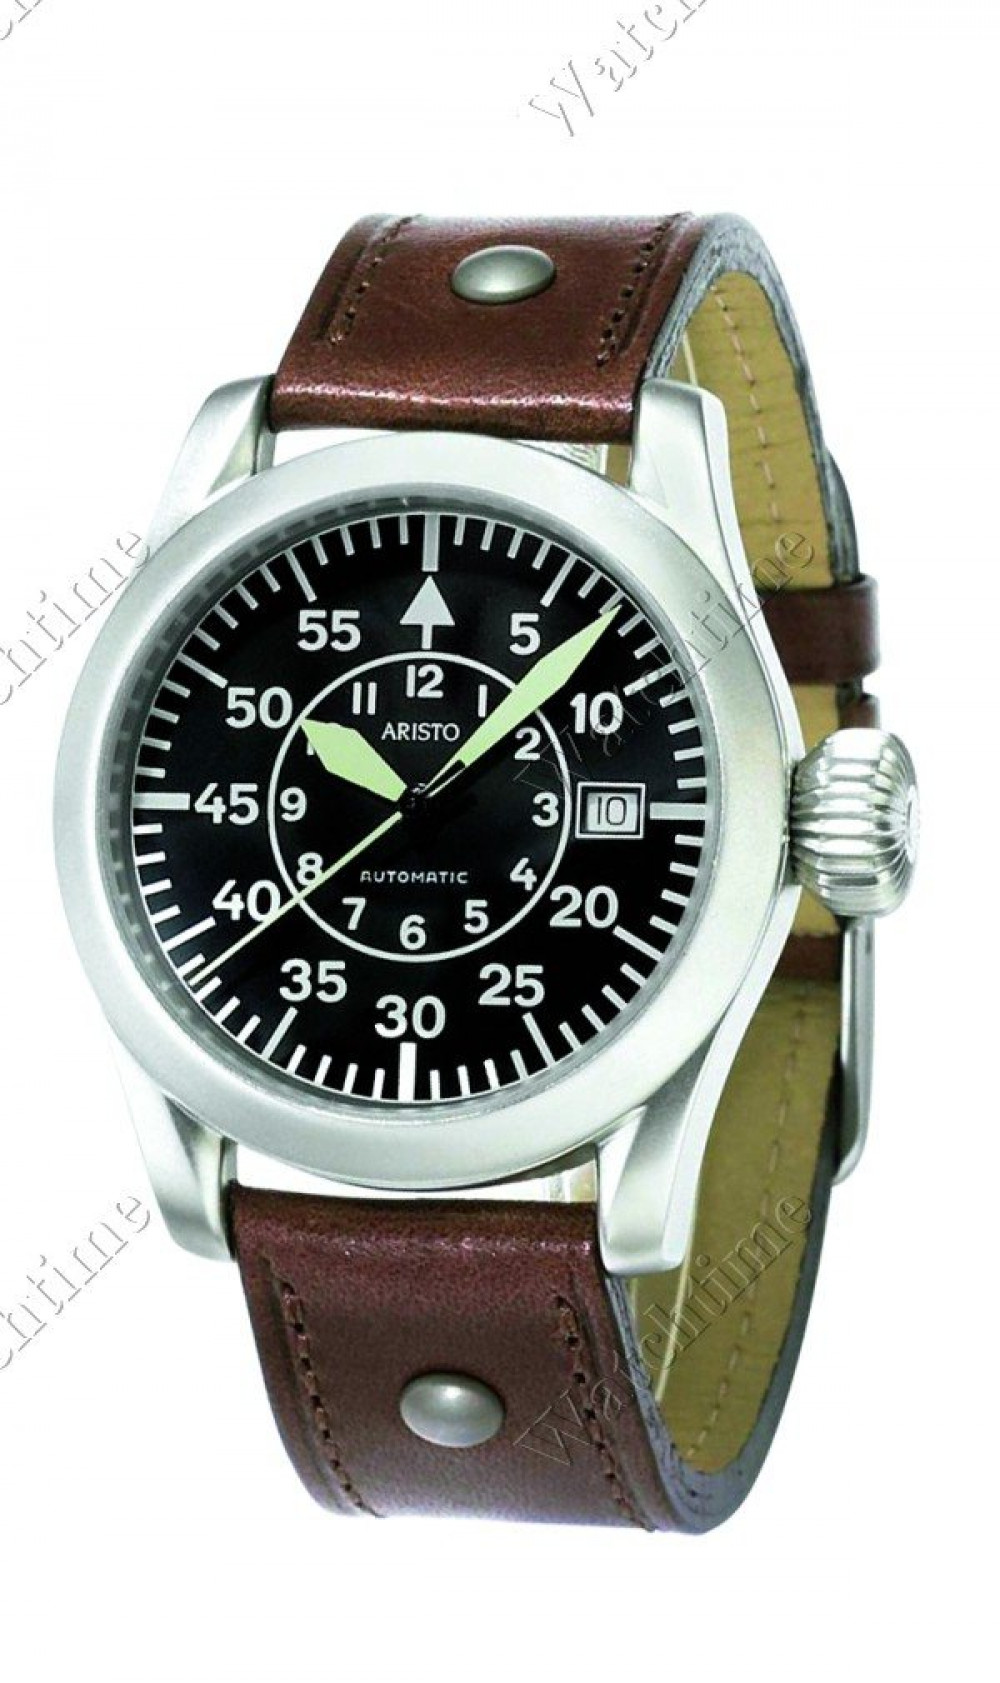 Zegarek firmy Aristo, model Aristo Kunstflieger Prototyp